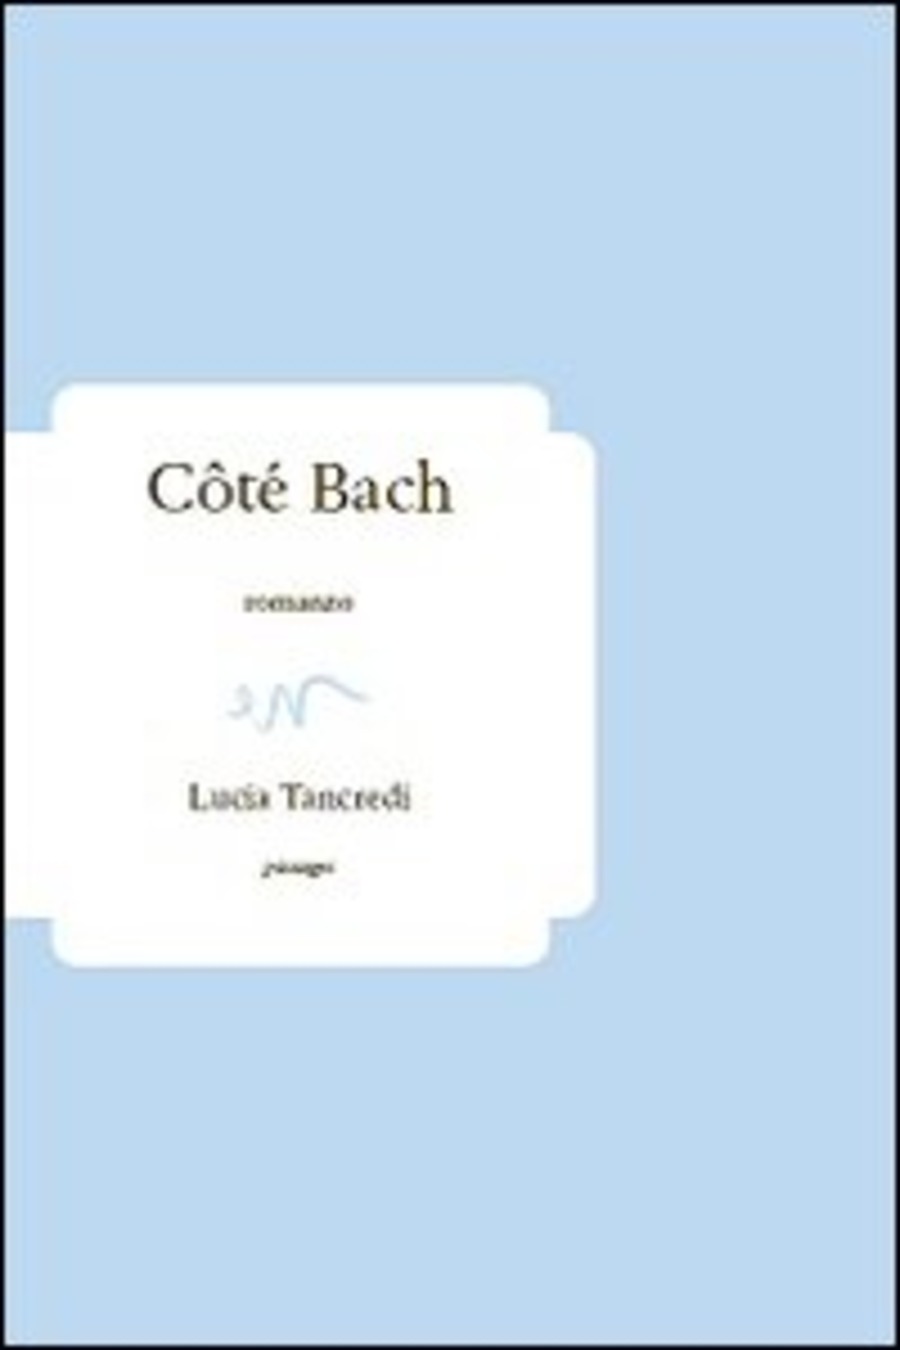 Côté Bach